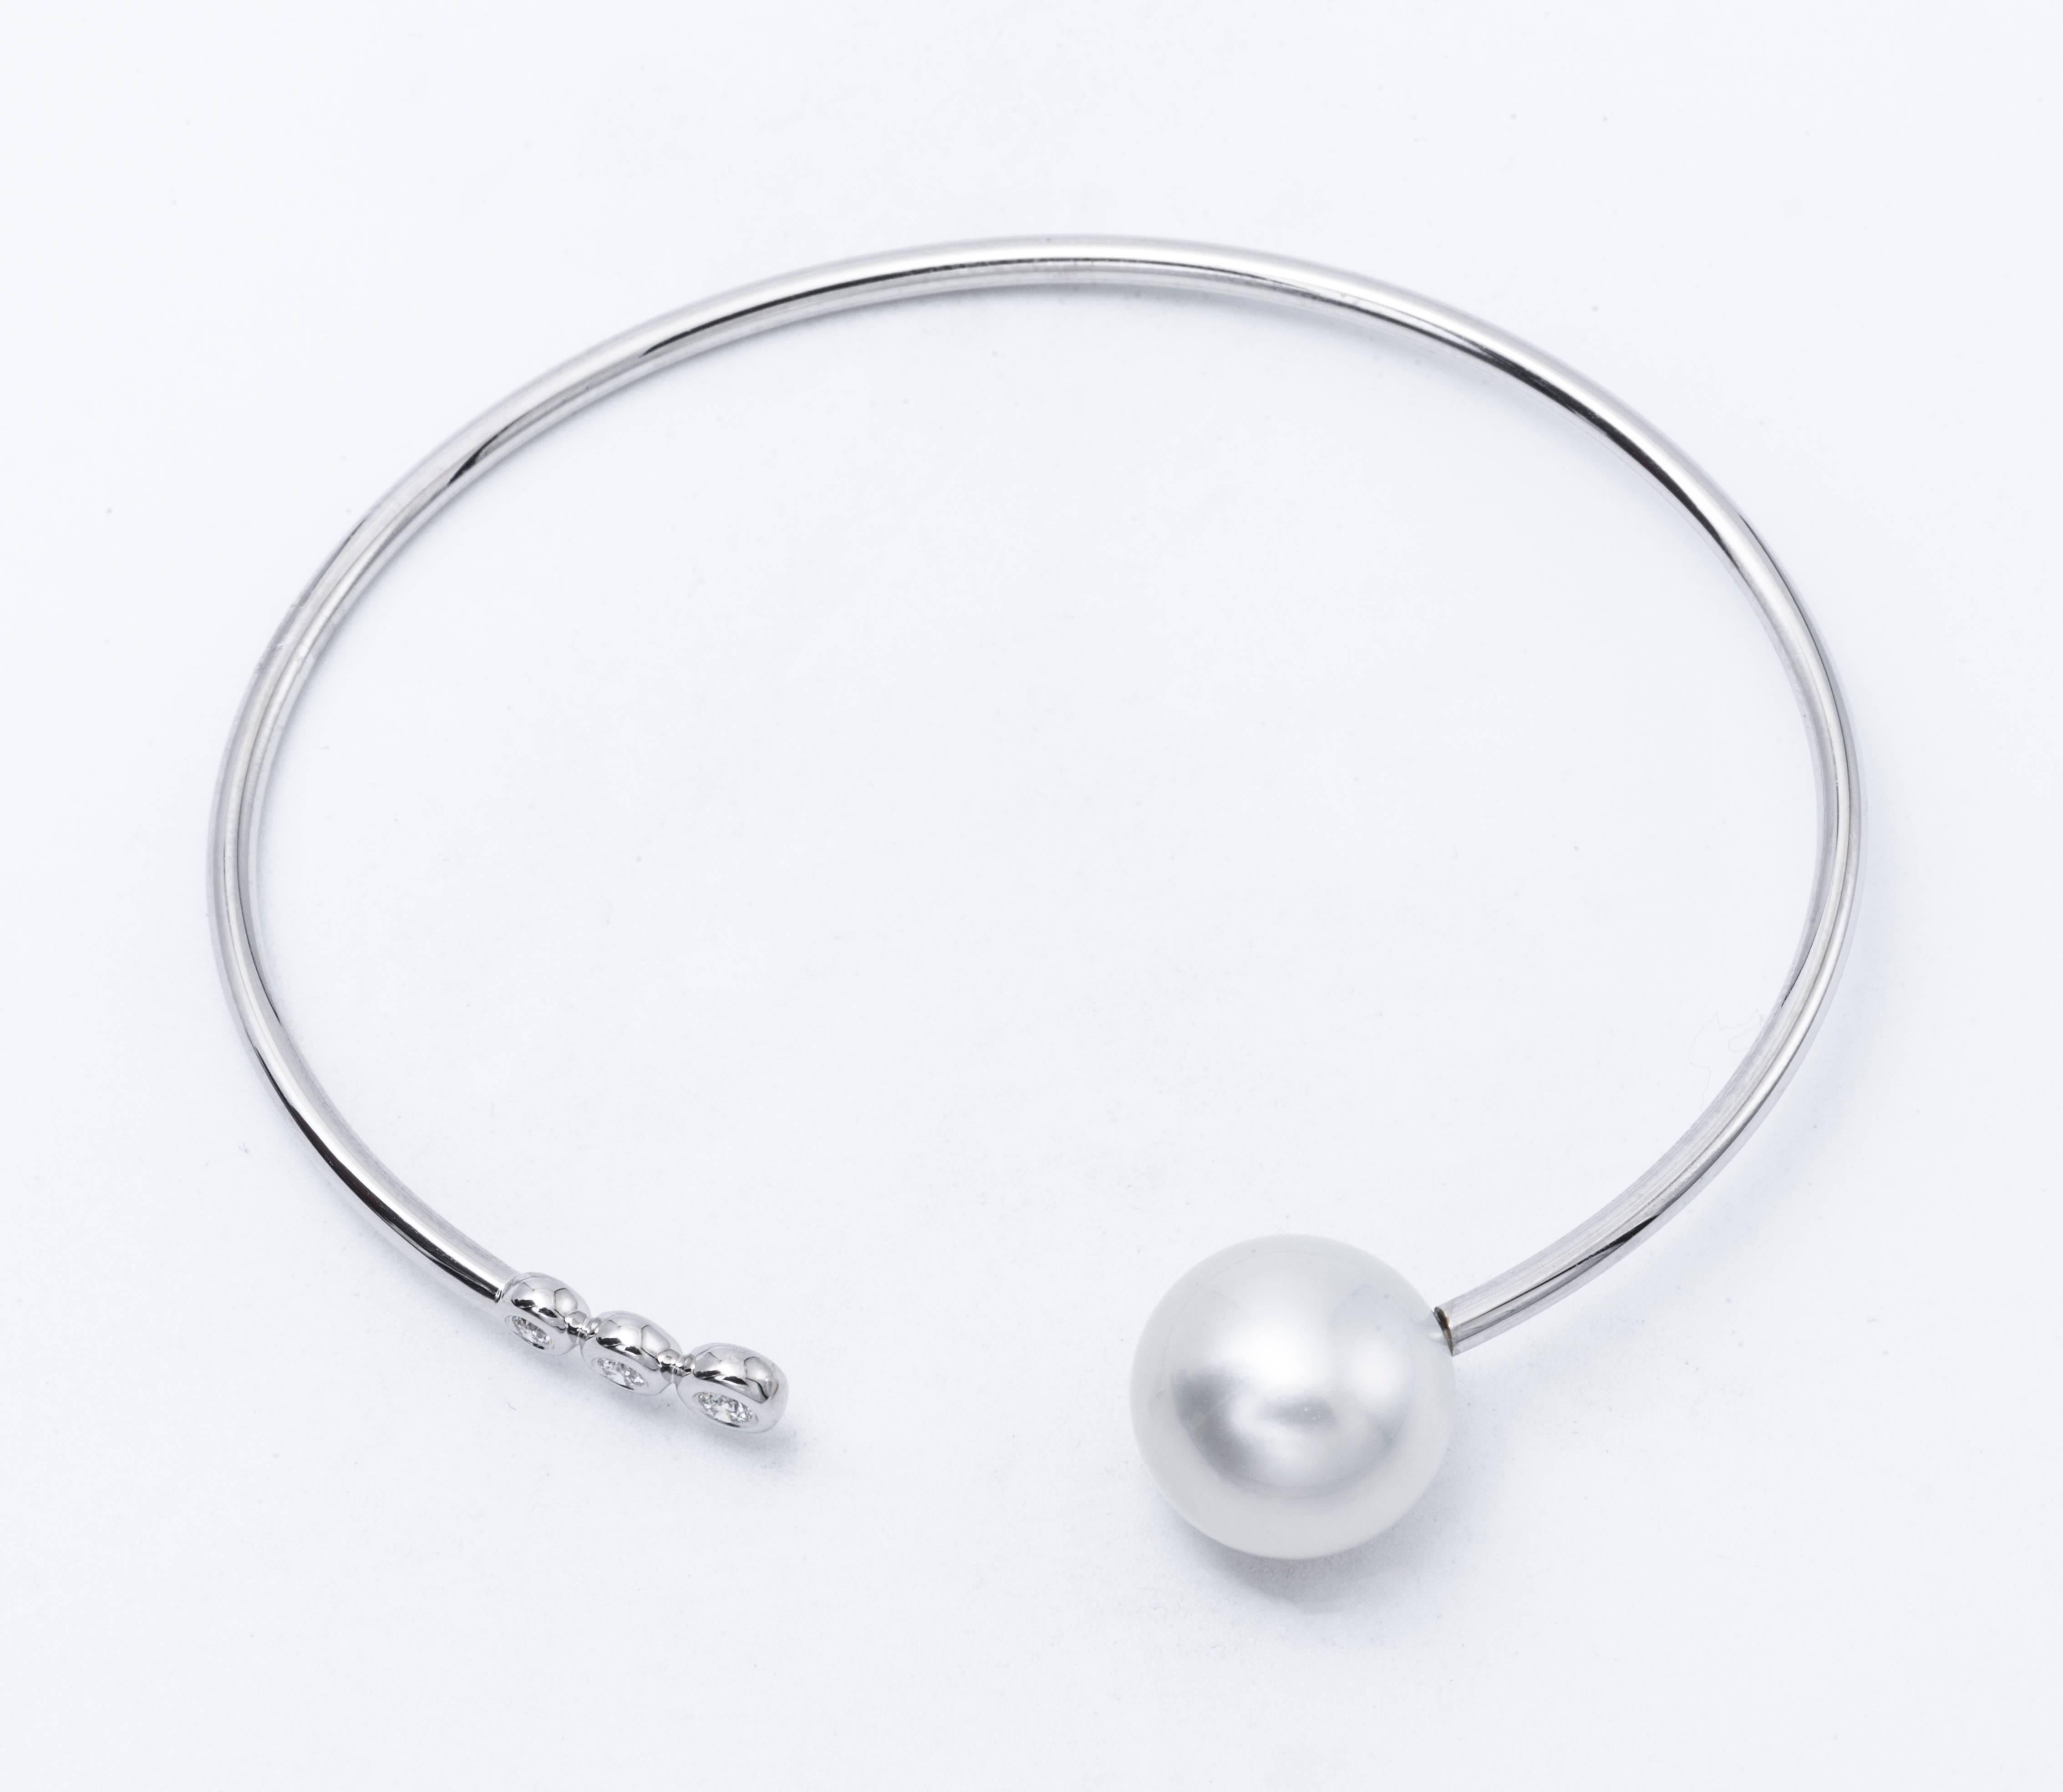 bracelet ouvert en or blanc 18 carats comportant une perle des mers du Sud mesurant 11-12 mm et trois diamants pesant 0,10 carats.
Couleur G-H
Clarity SI

Les perles peuvent être changées en roses, tahitiennes ou dorées sur demande. Le prix est